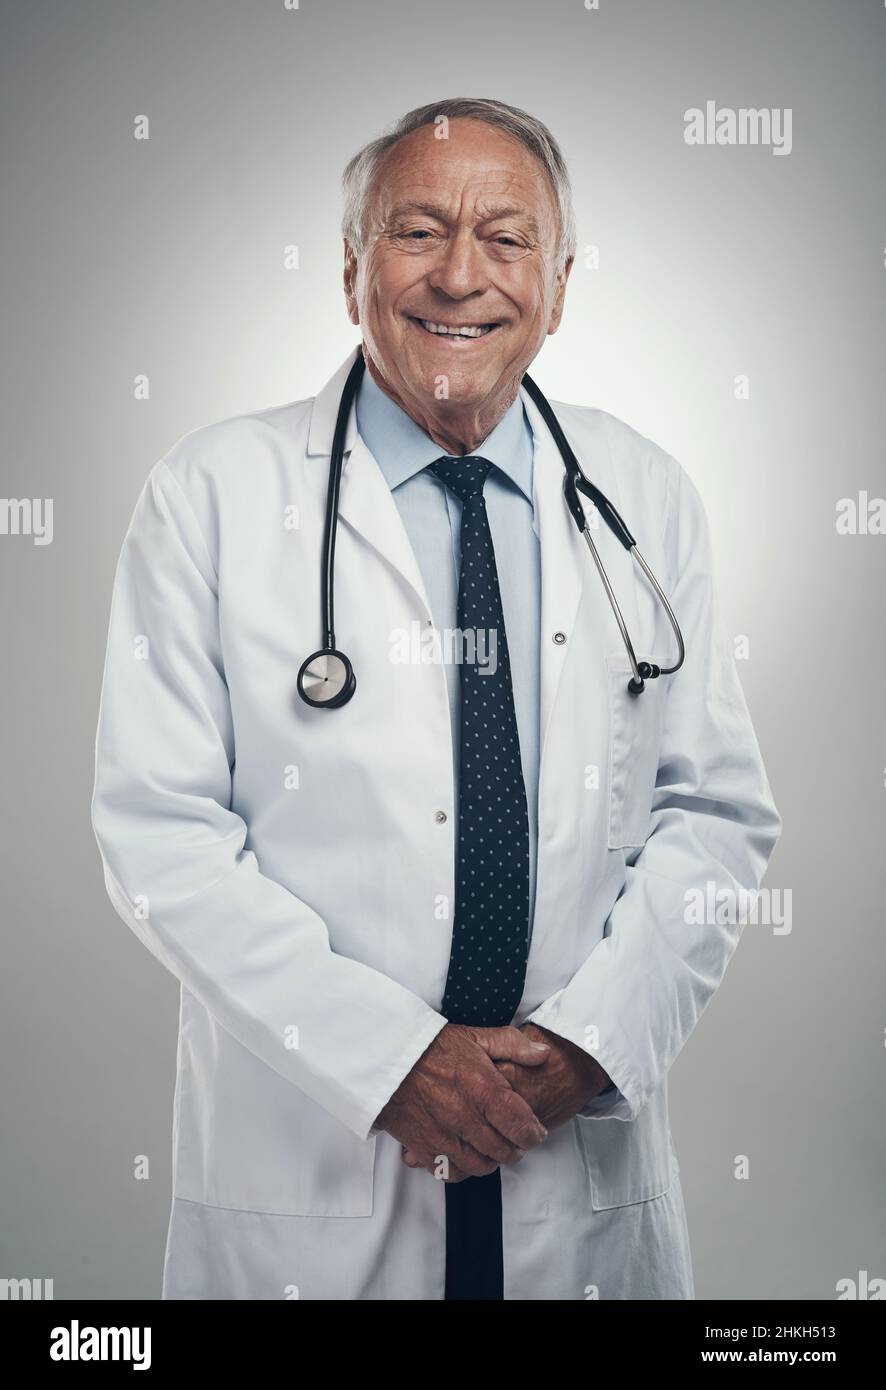 Nicht alle Helden tragen Umhänge. Aufnahme eines älteren männlichen Arztes in einem Studio vor grauem Hintergrund. Stockfoto